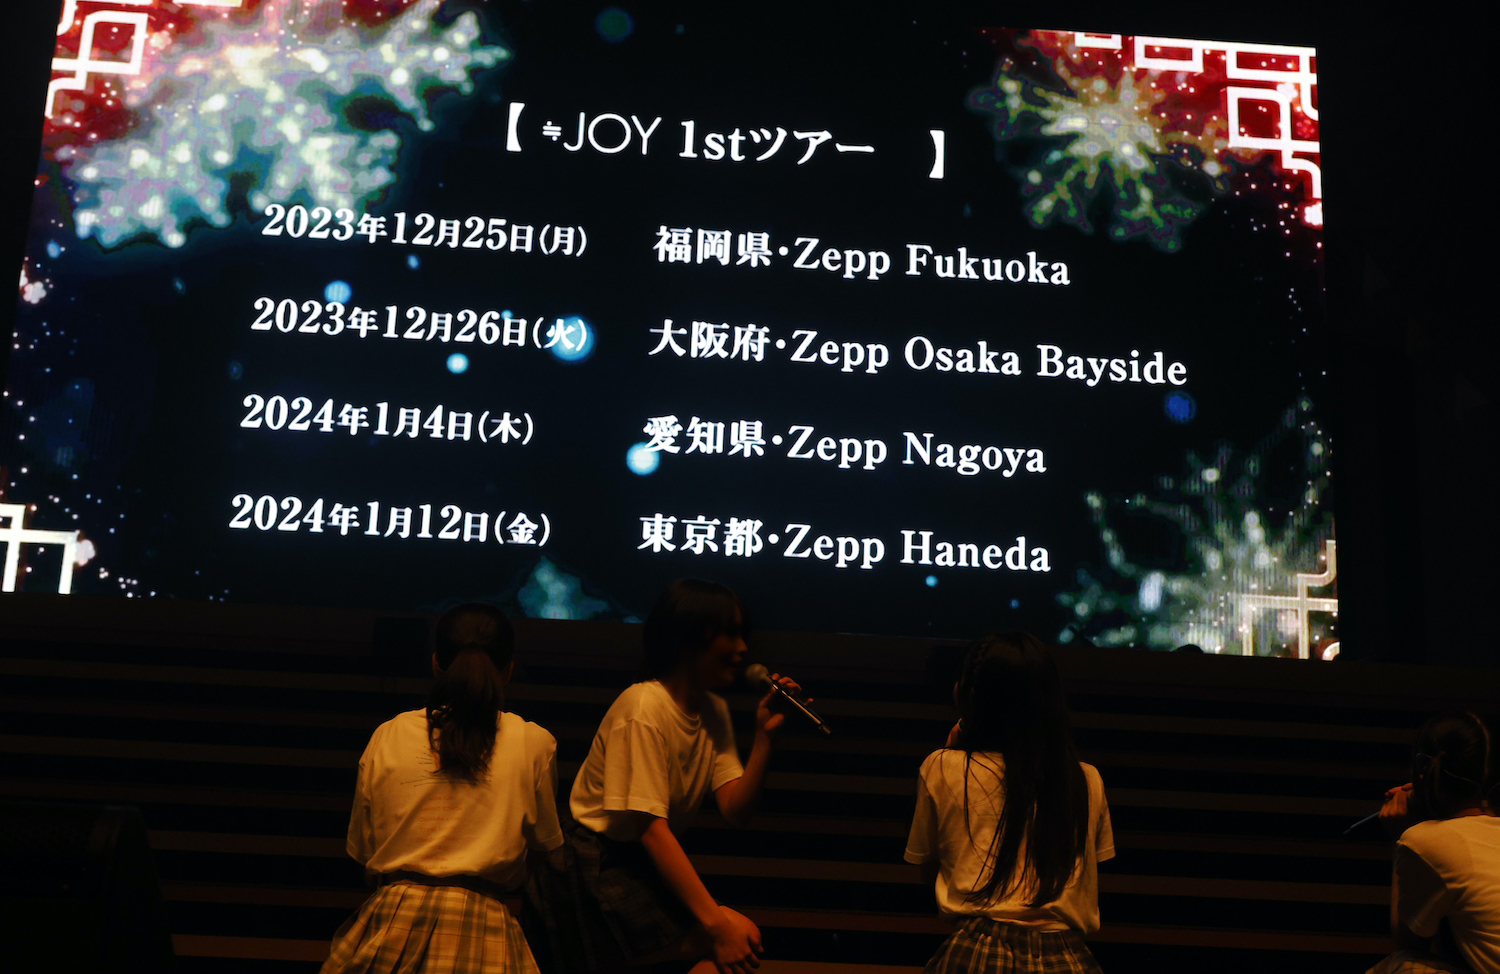 指原莉乃プロデュースによるアイドルグループ「≒JOY」1stコンサート in パシフィコ横浜 国立大ホール